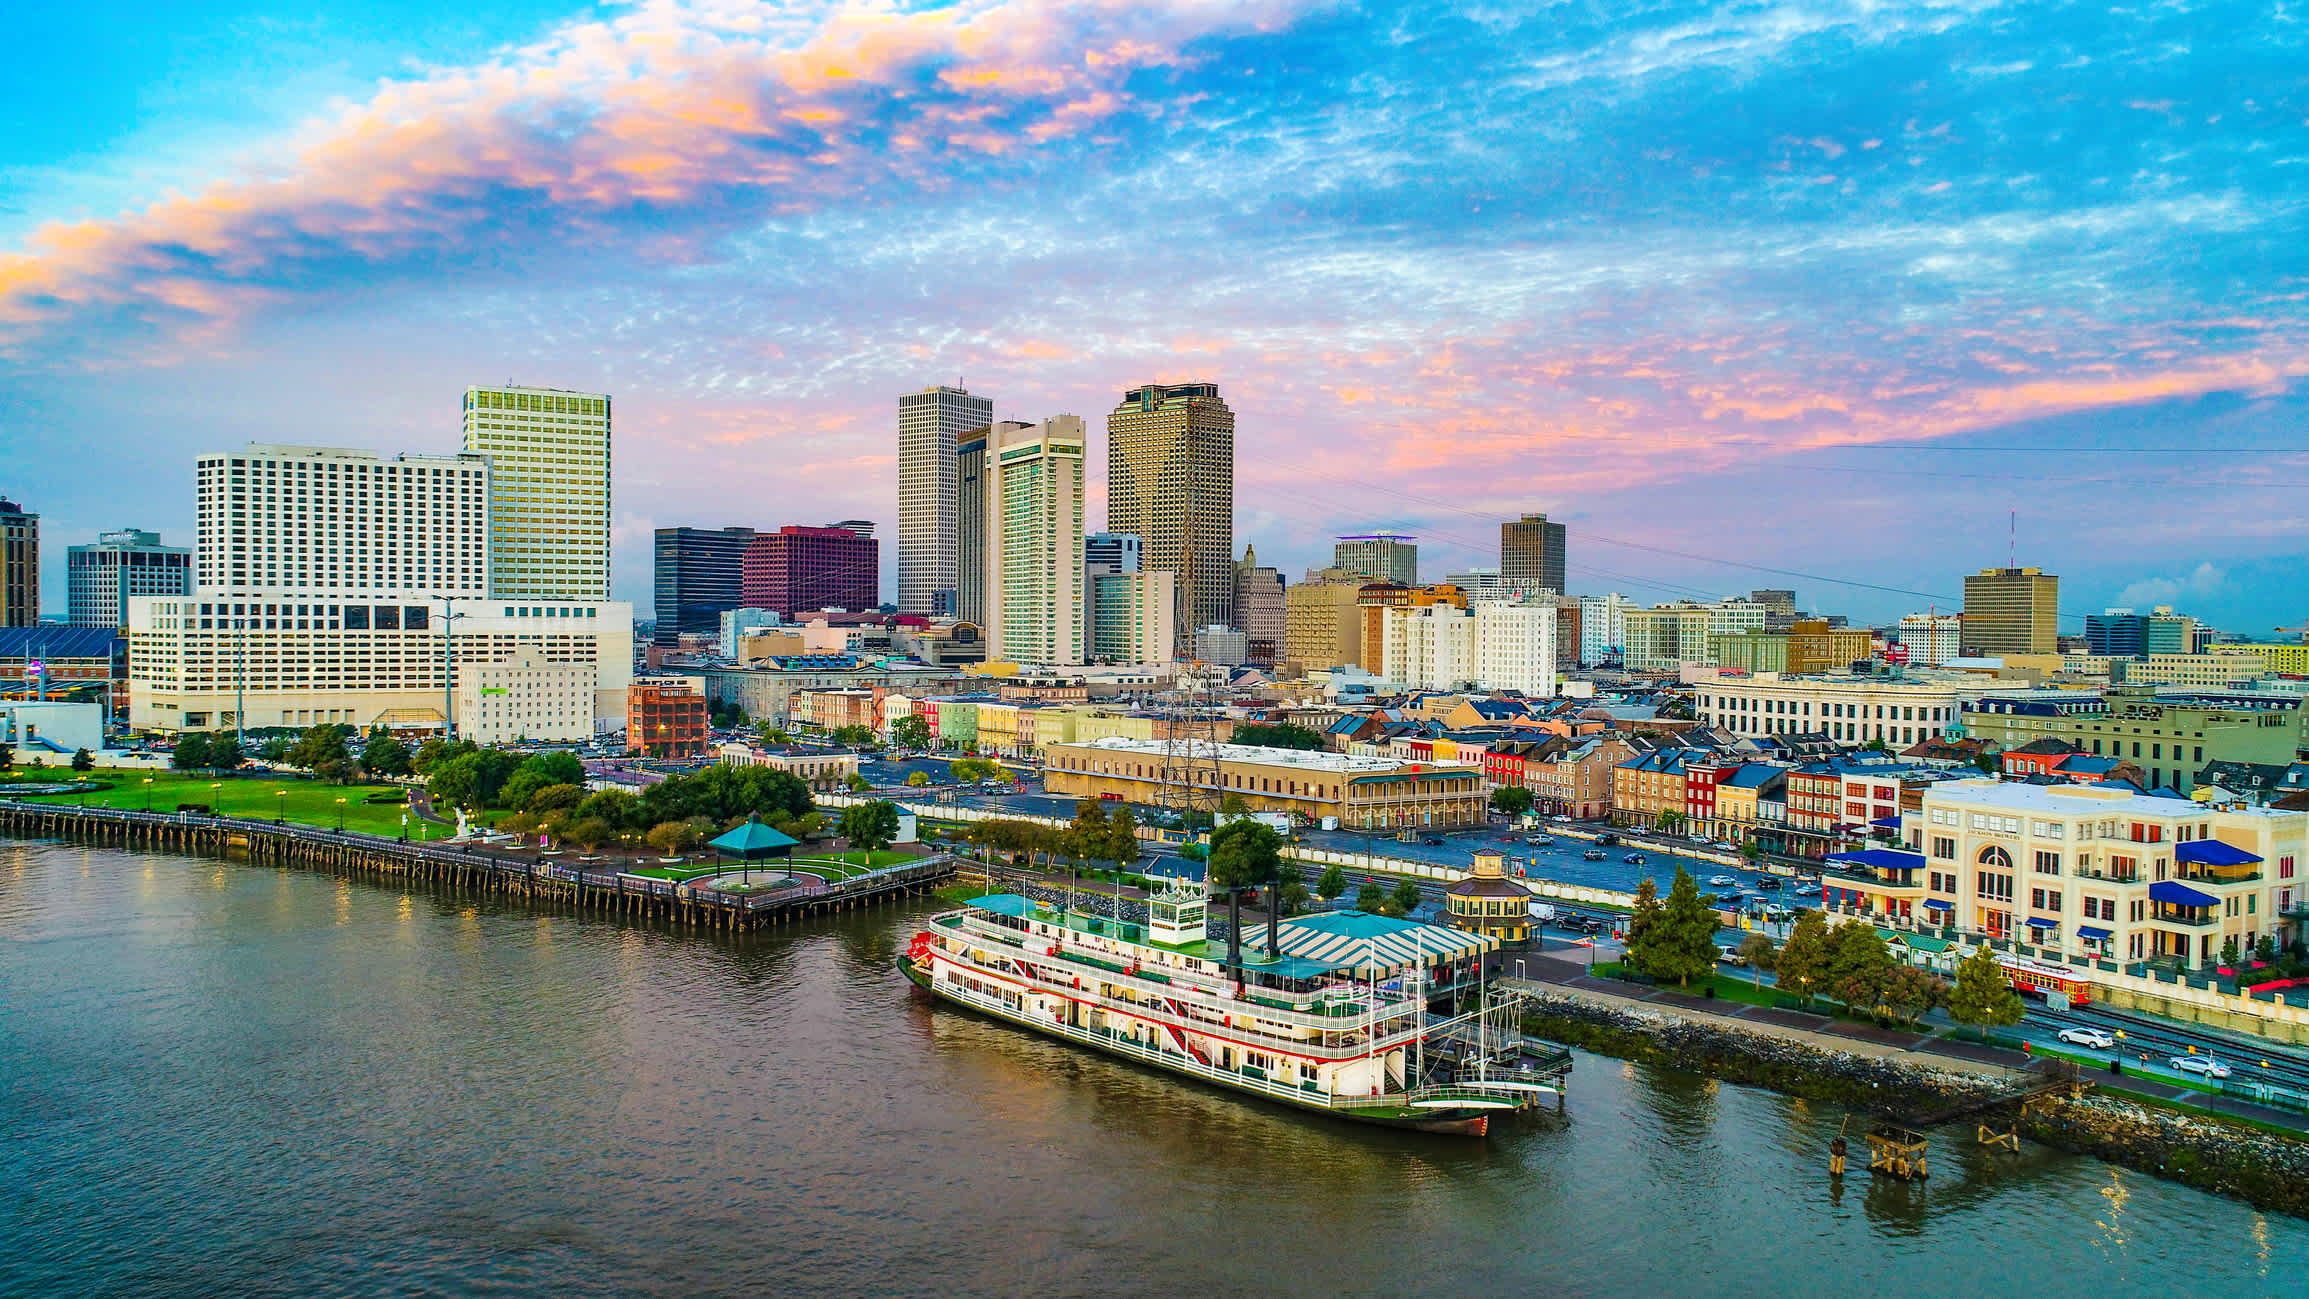 Skyline und Schiff auf dem Wasser in New Orleans